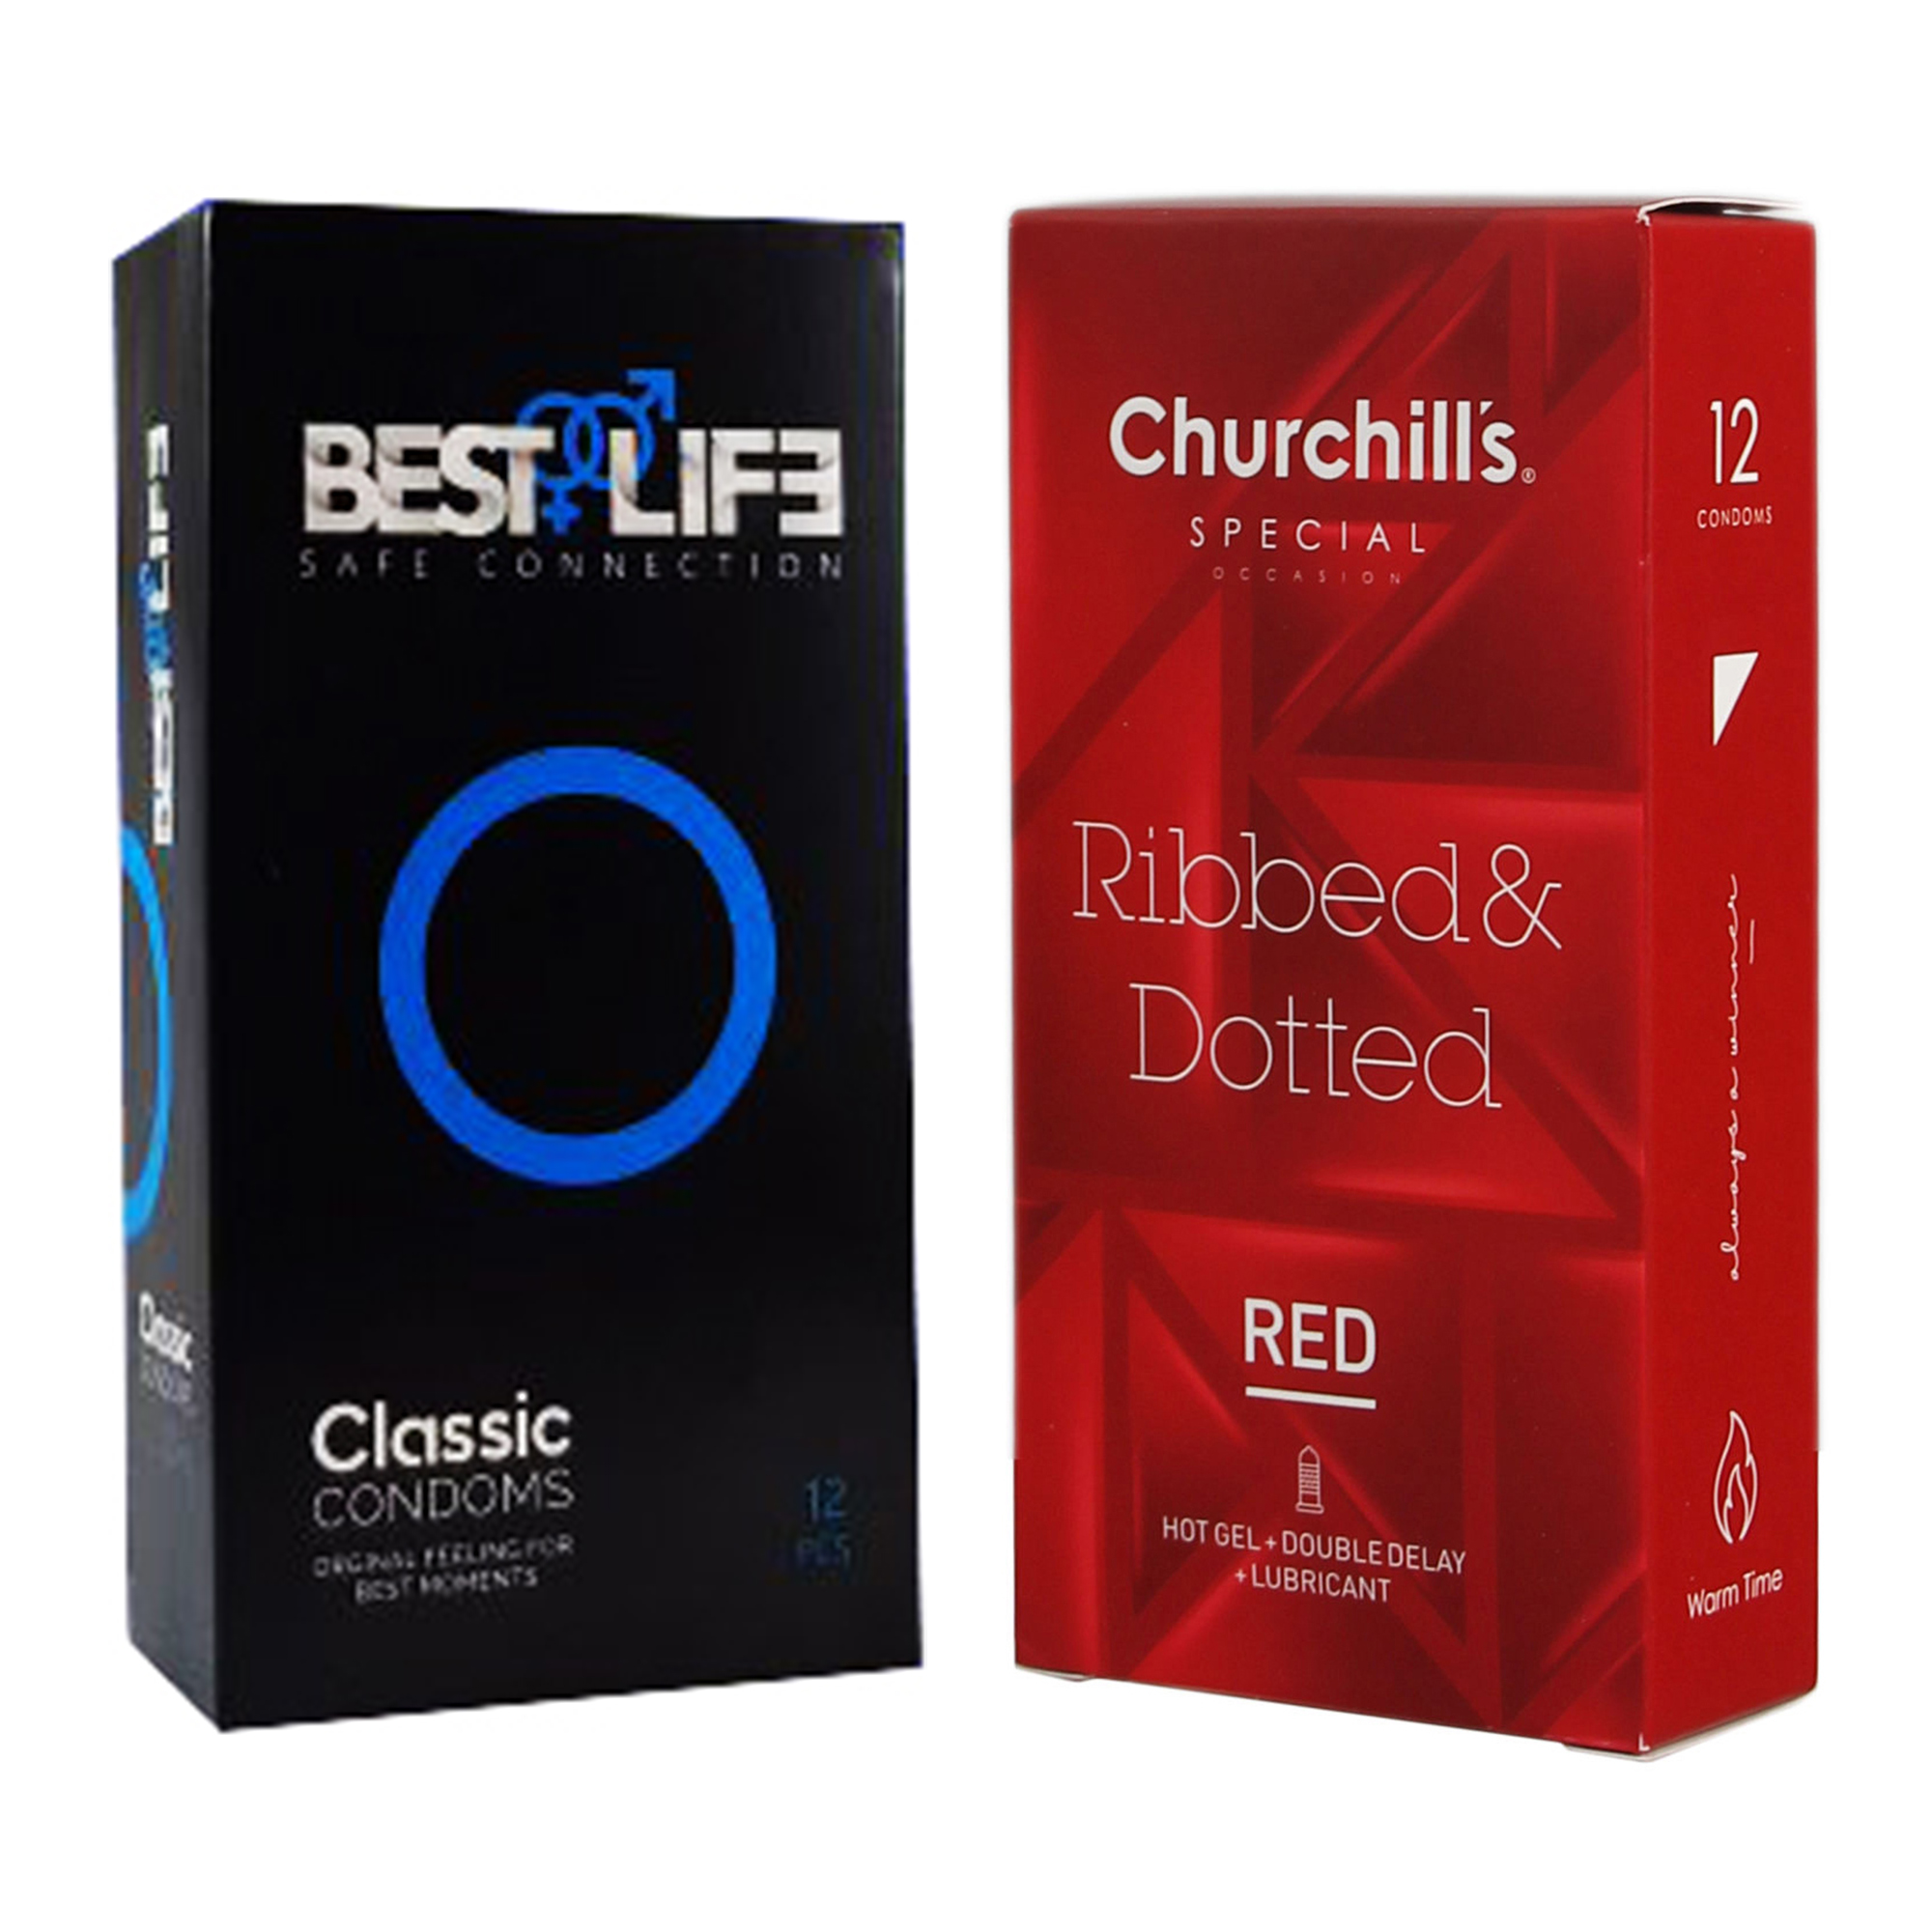 کاندوم چرچیلز مدل Ribbed & Dotted Red بسته 12 عددی به همراه کاندوم بست لایف مدل Classic بسته 12 عددی